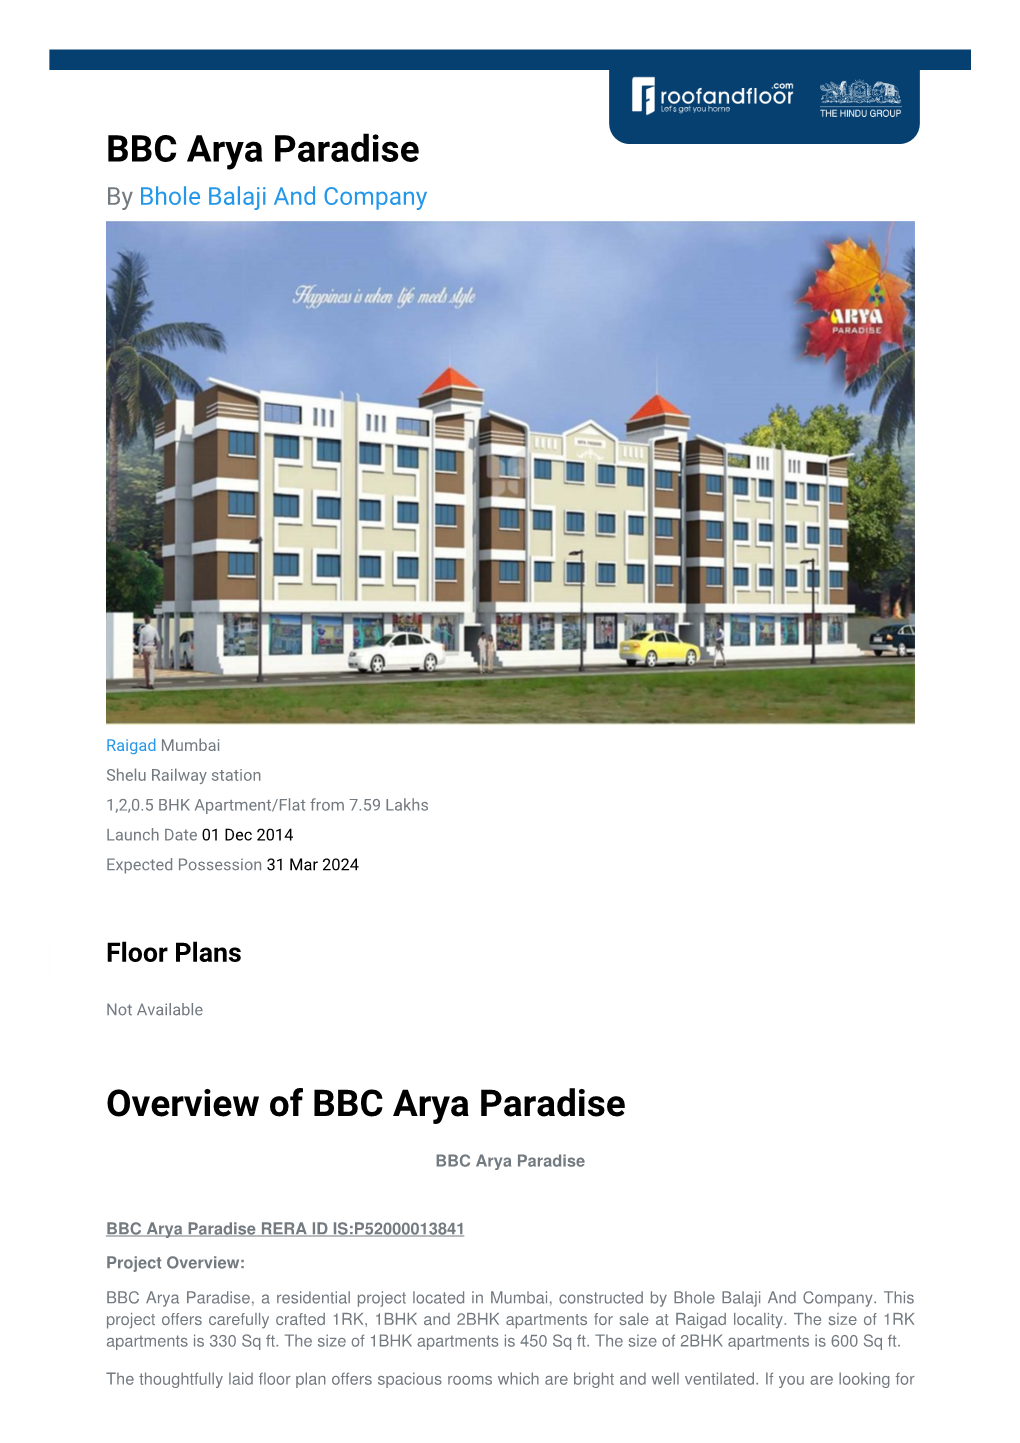 BBC Arya Paradise by Bhole Balaji and Company